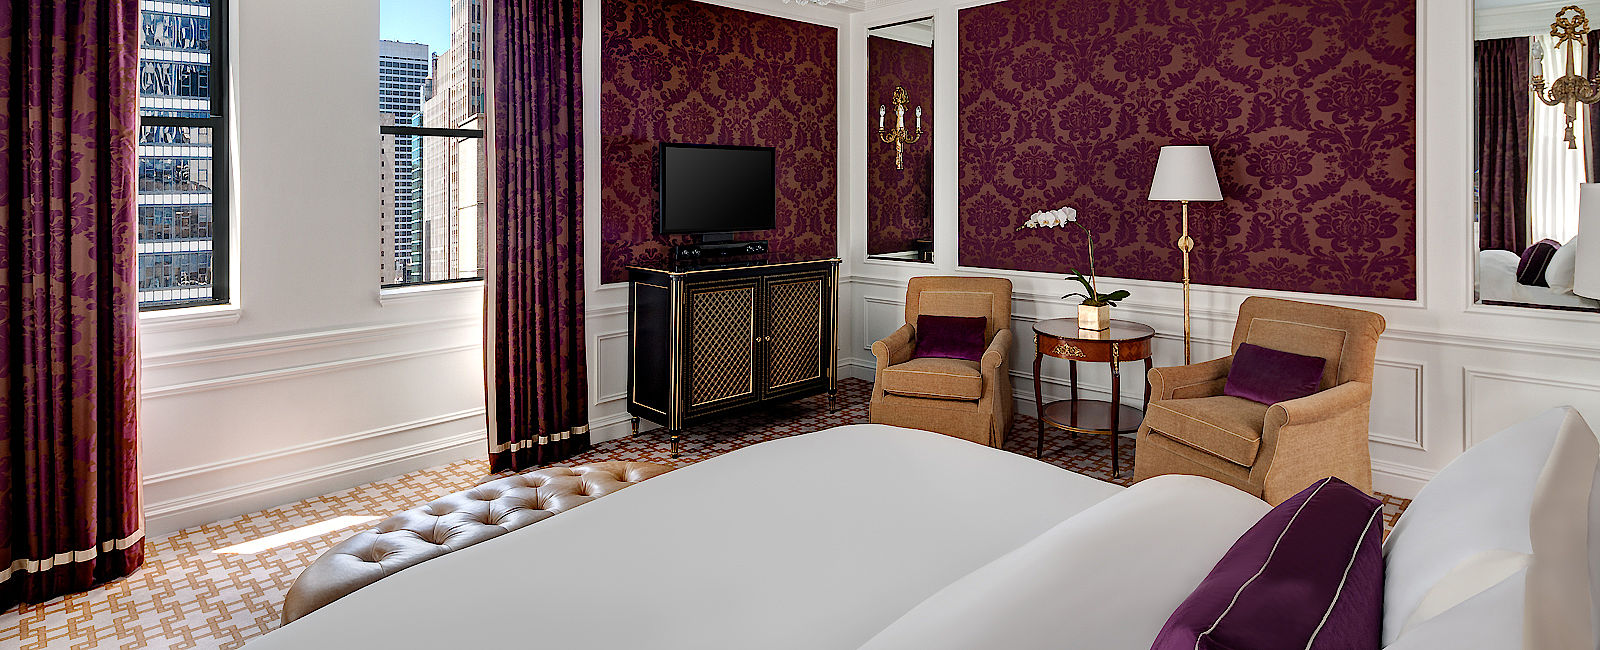 HOTEL TIPPS
 The St. Regis New York 
 Preisgekröntes Luxus Hotel im Herzen von Manhattan 